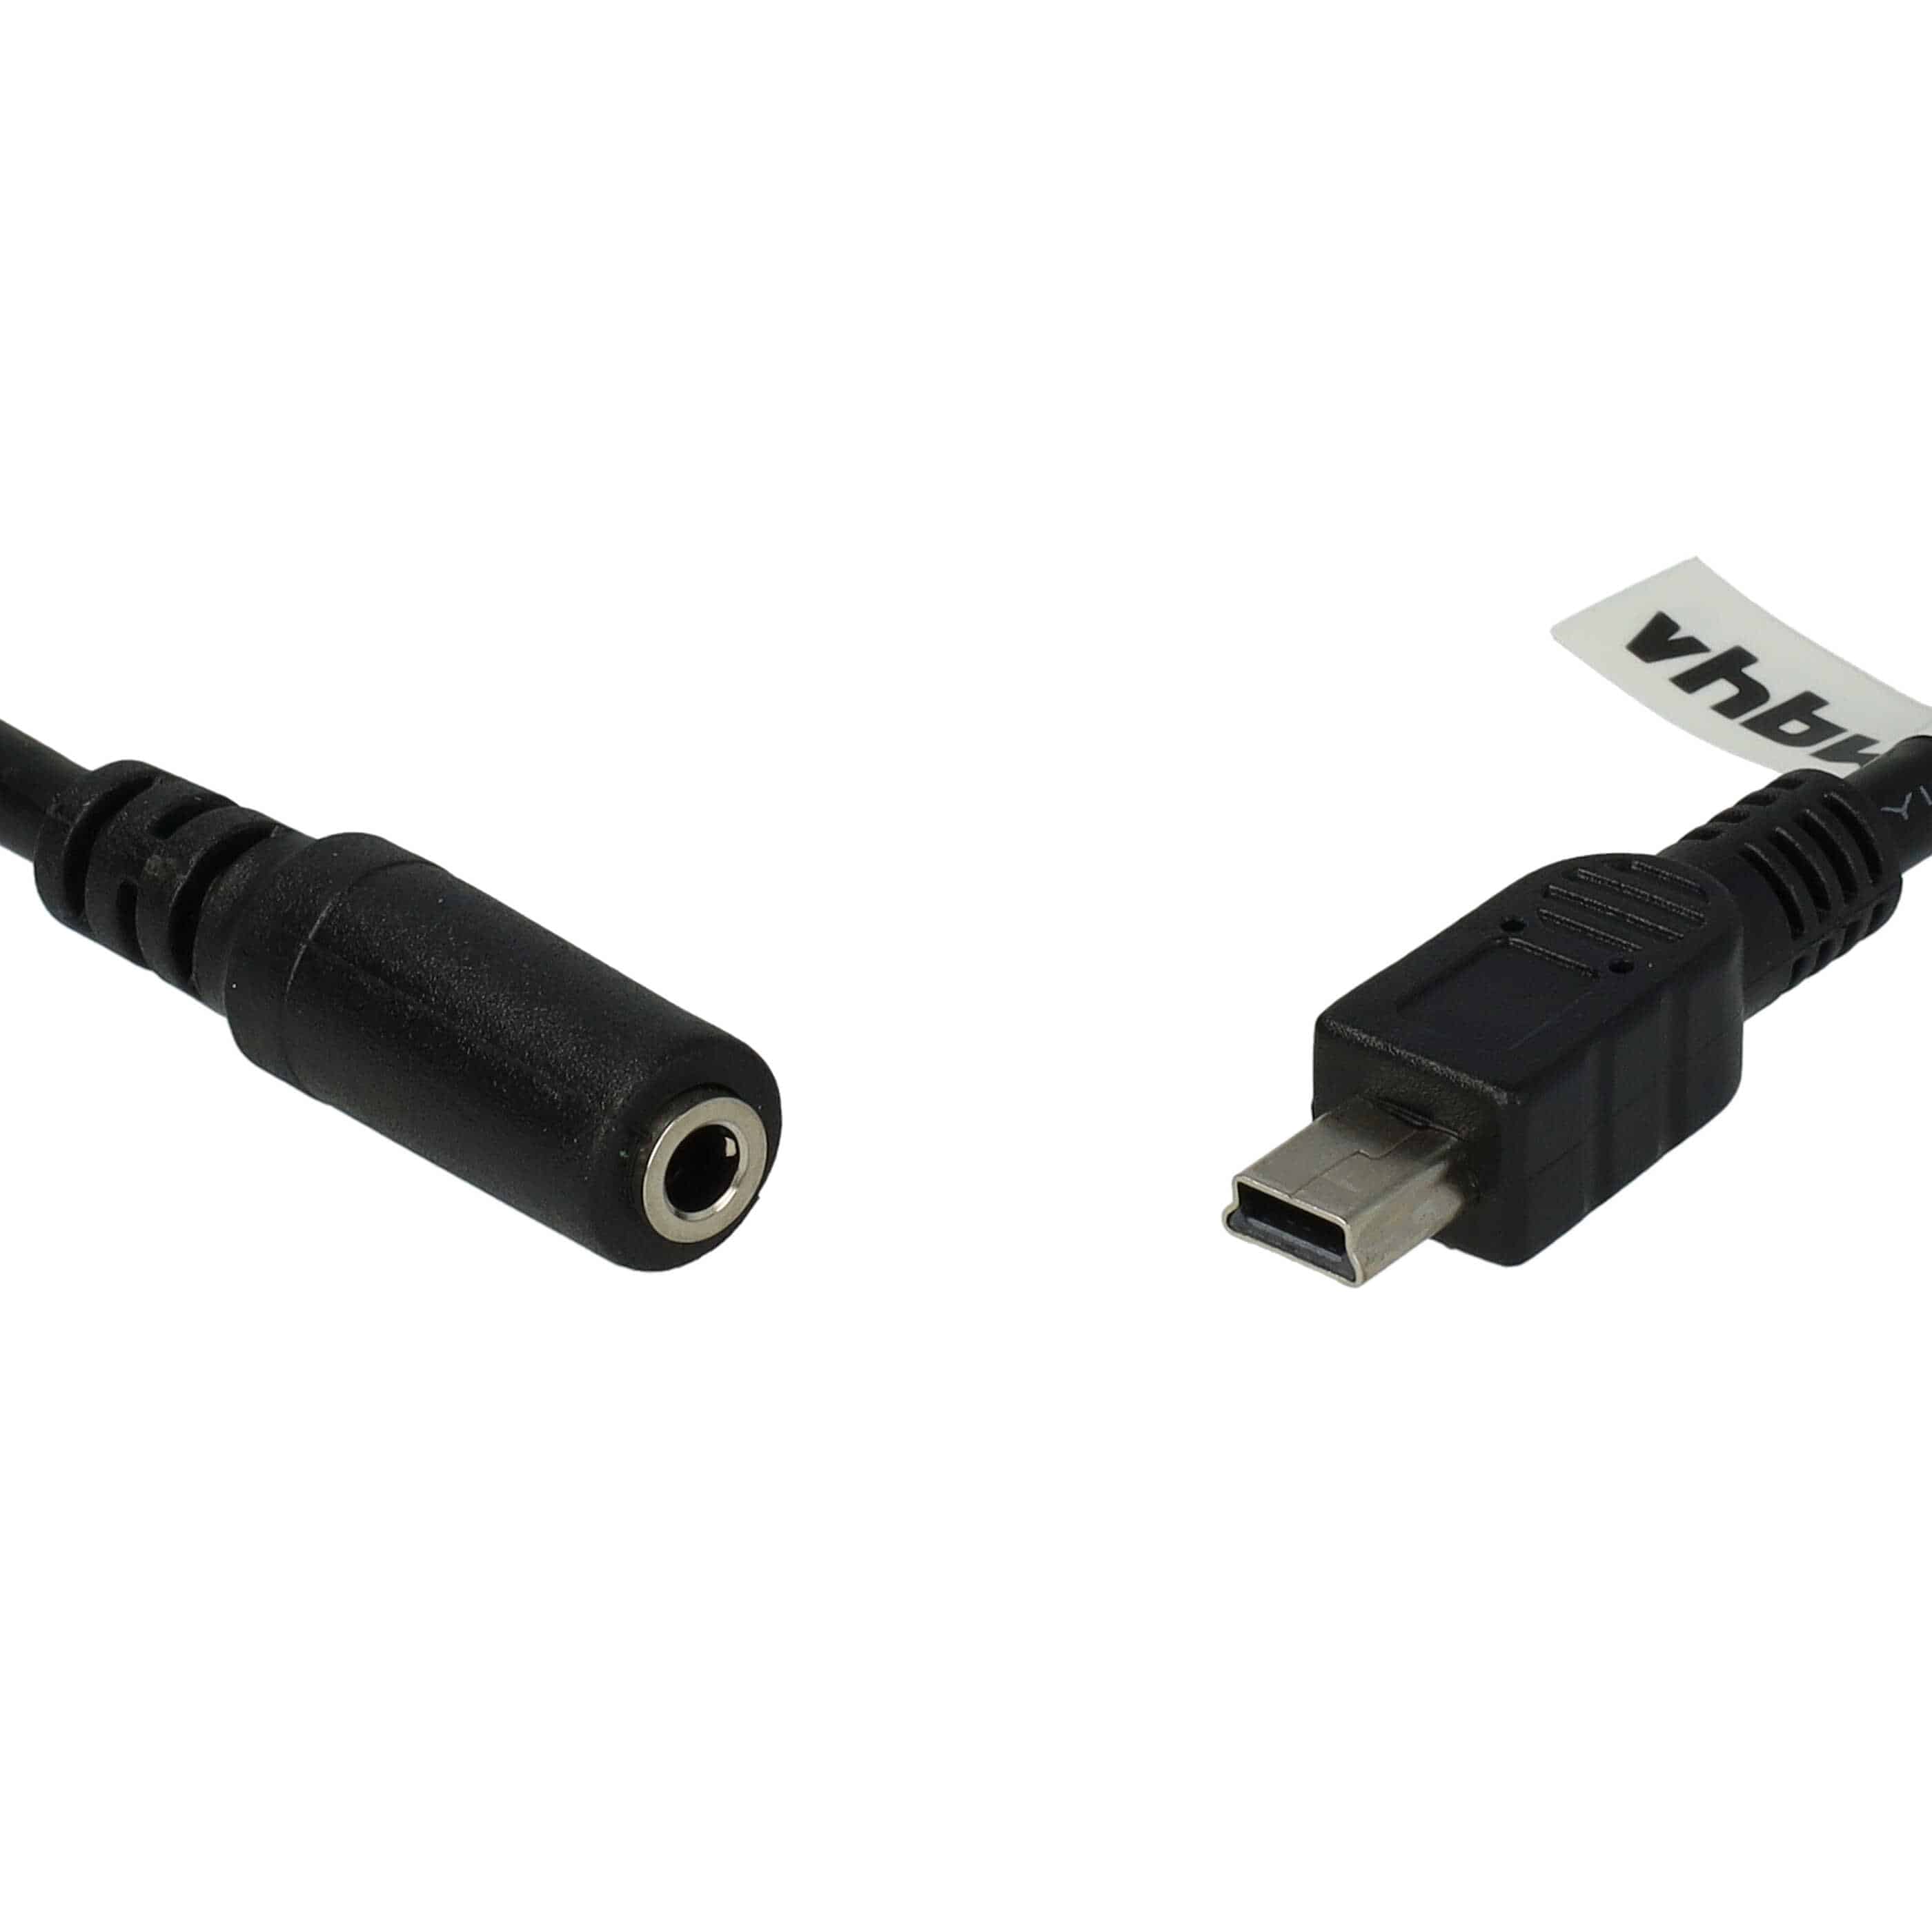 Przejściówka mini USB na gniazdo jack do GoPro Hero ActionCam i innych modeli - adapter na mikrofon